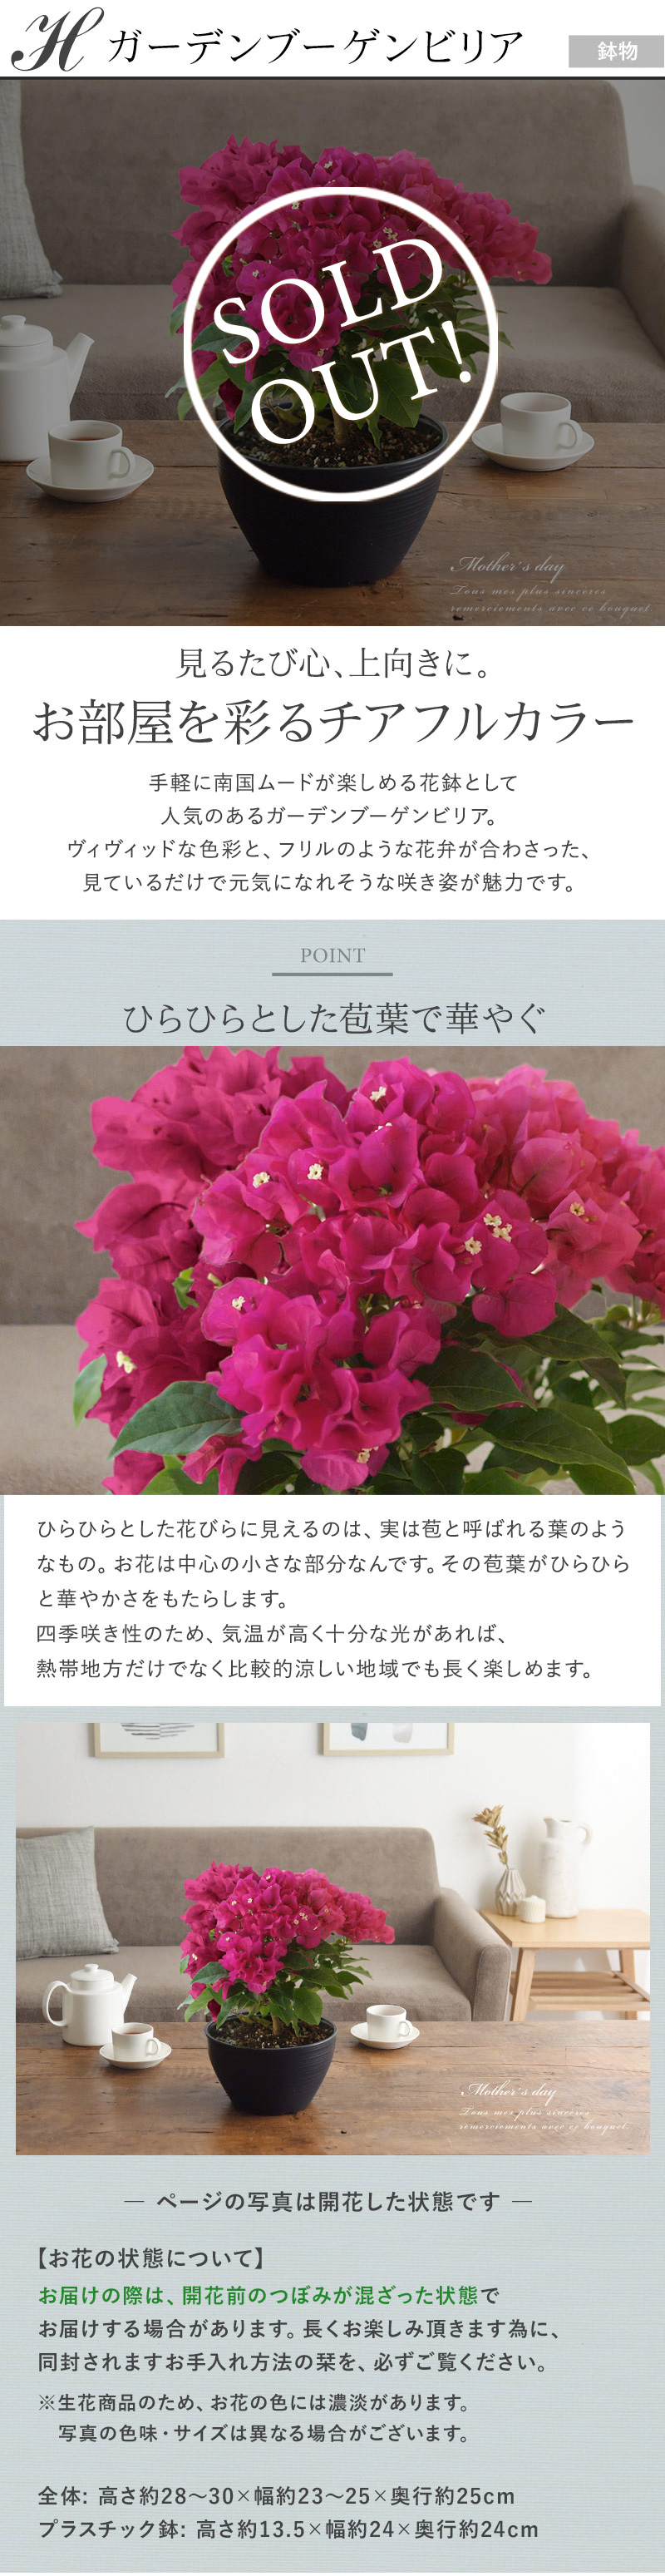 21 母の日のお花 Merci メルシー 送料無料 アンジェ Web Shop 本店